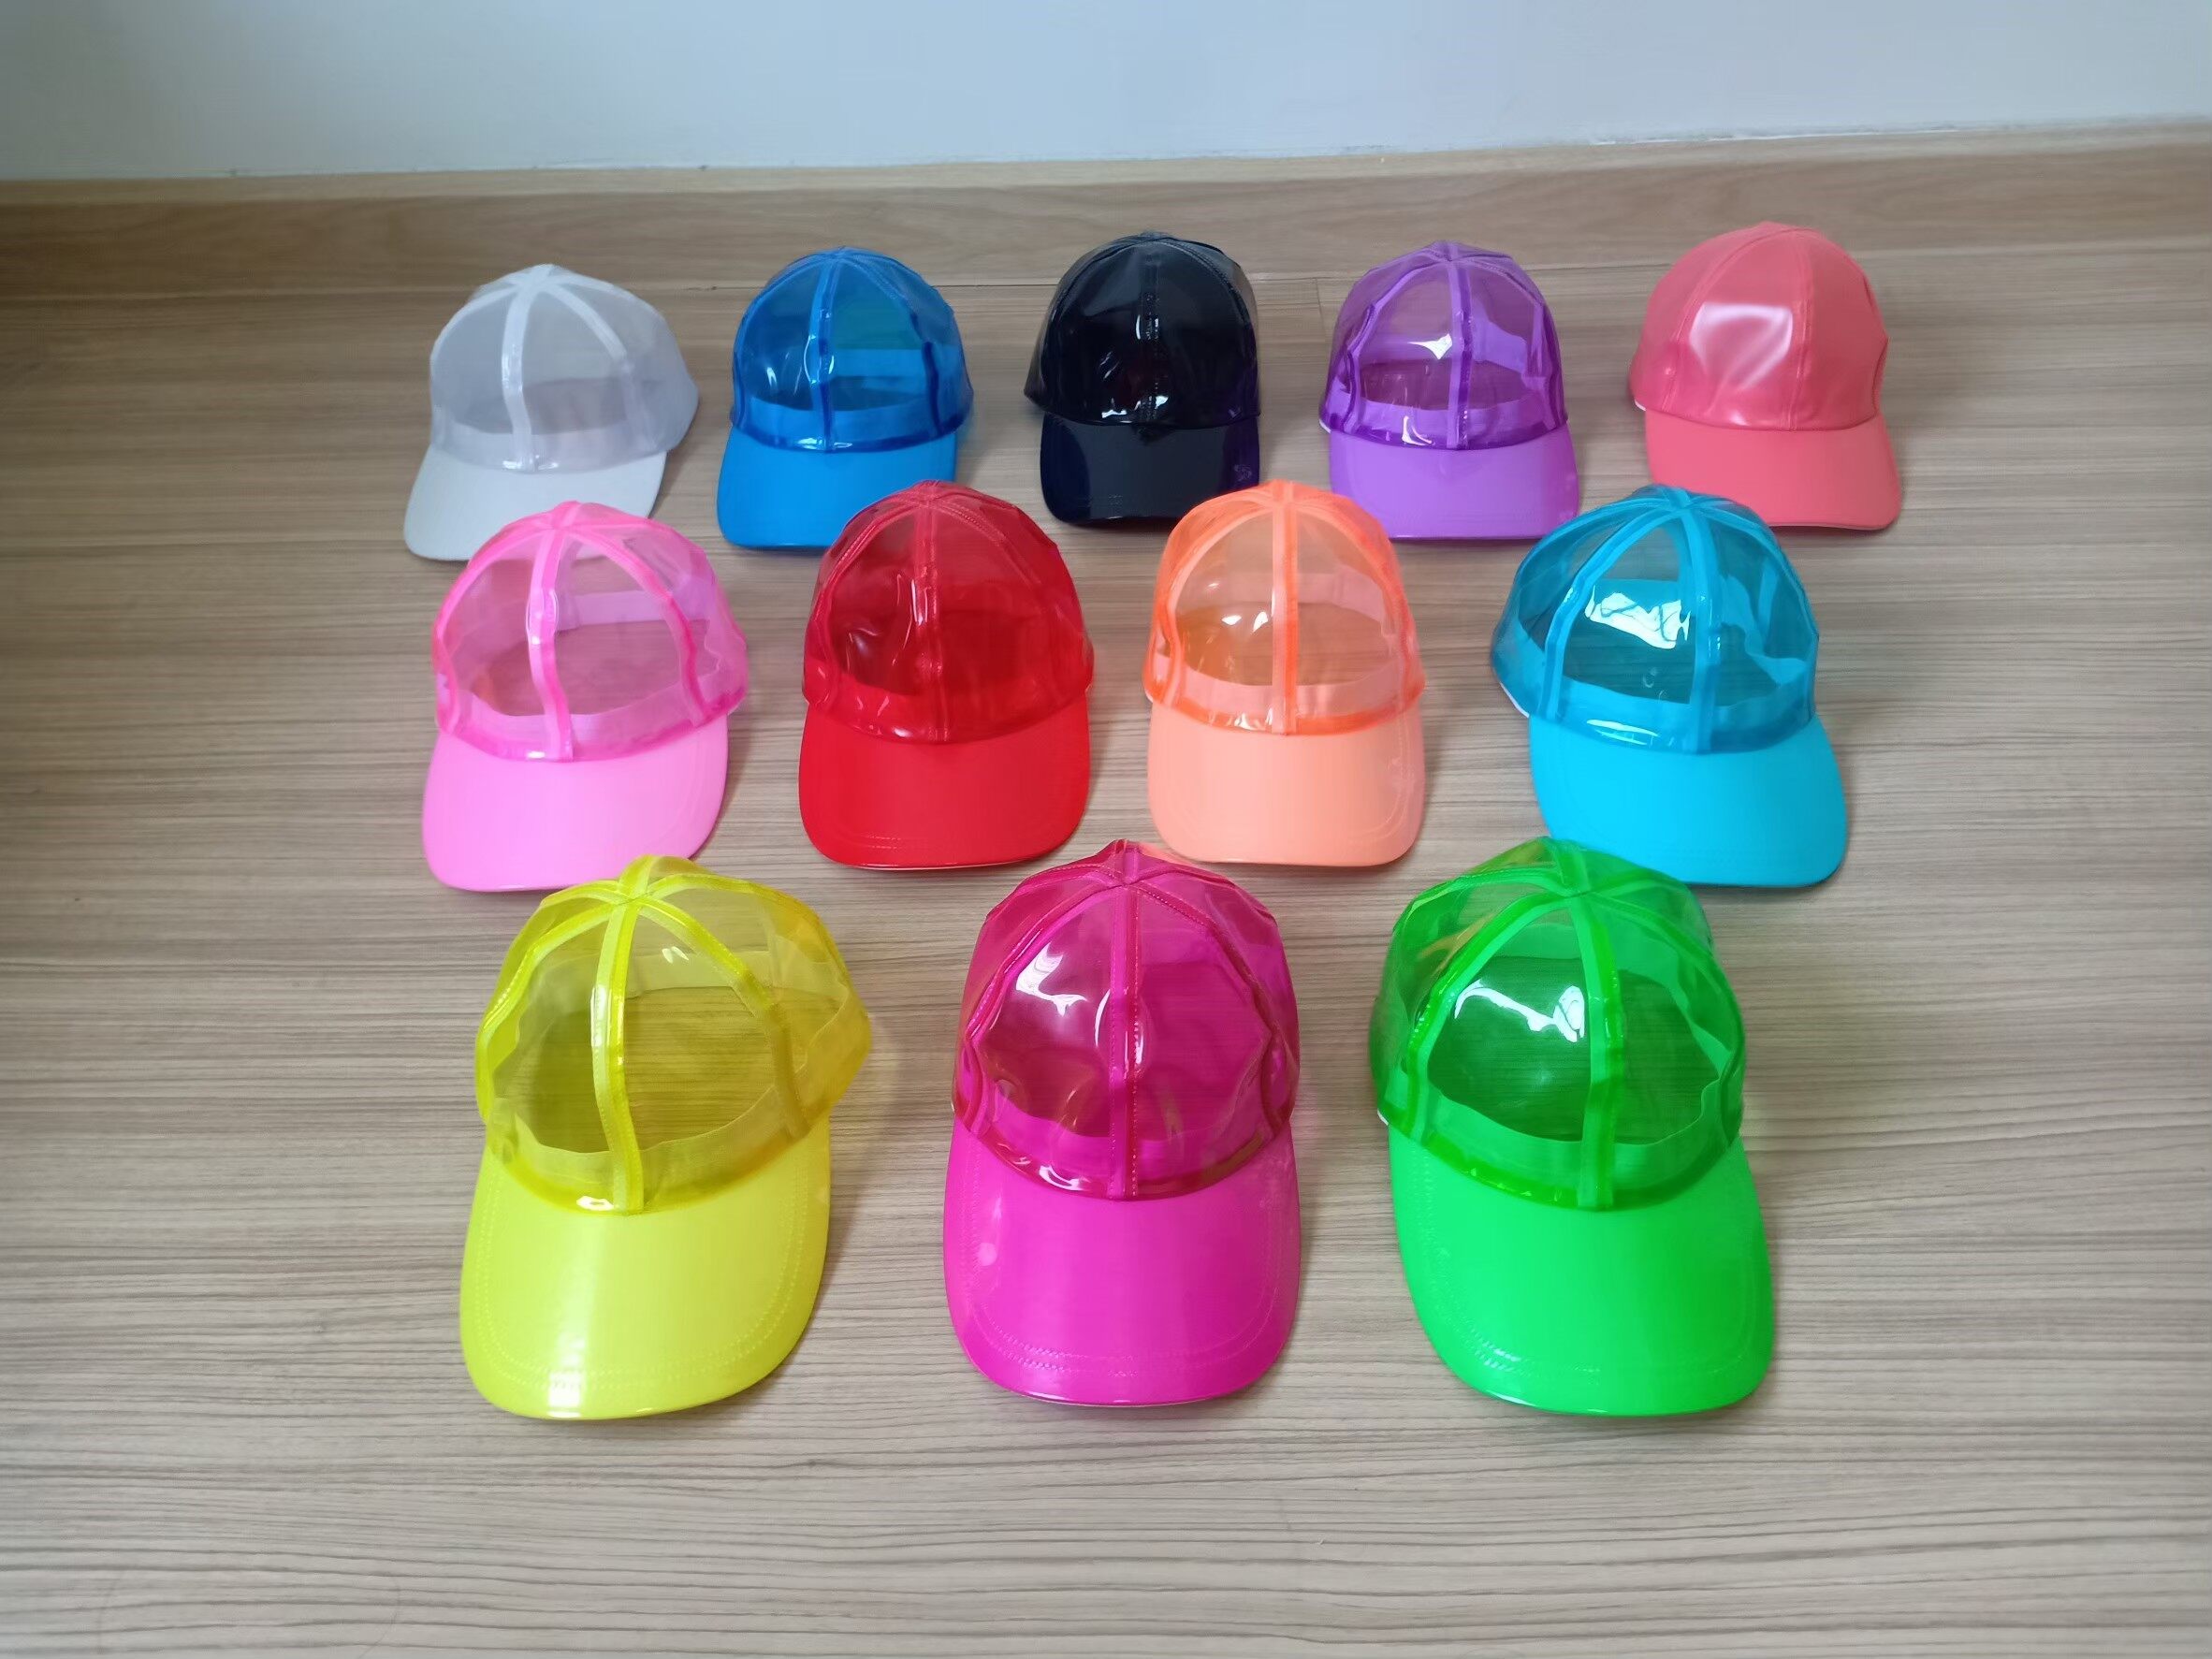 หมวกพลาสติก กันน้ำสงกรานต์ สีนีออนสะท้อนแสง 9 สี